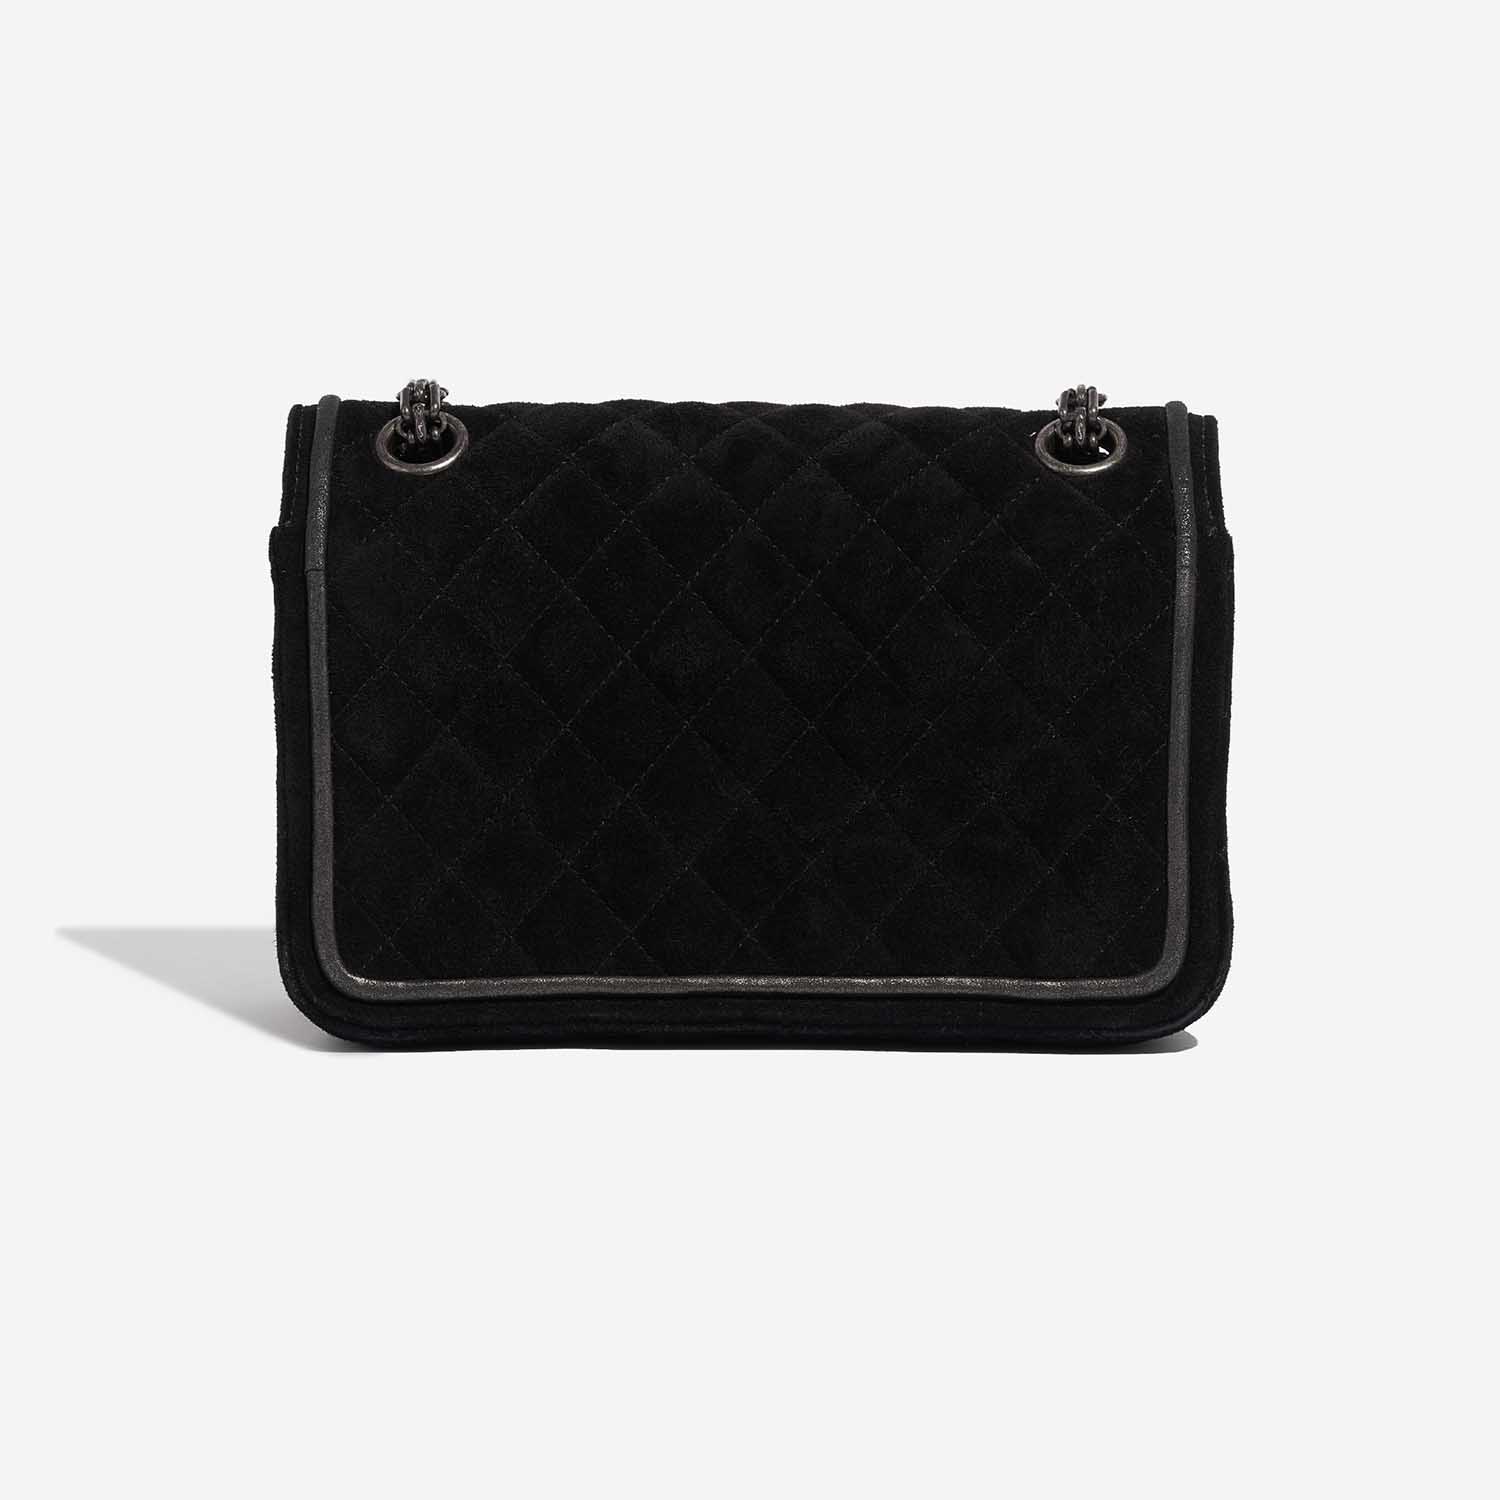 Pre-owned Chanel bag 2.55 Reissue Velvet Black Black Back | Sell your designer bag on Saclab.com